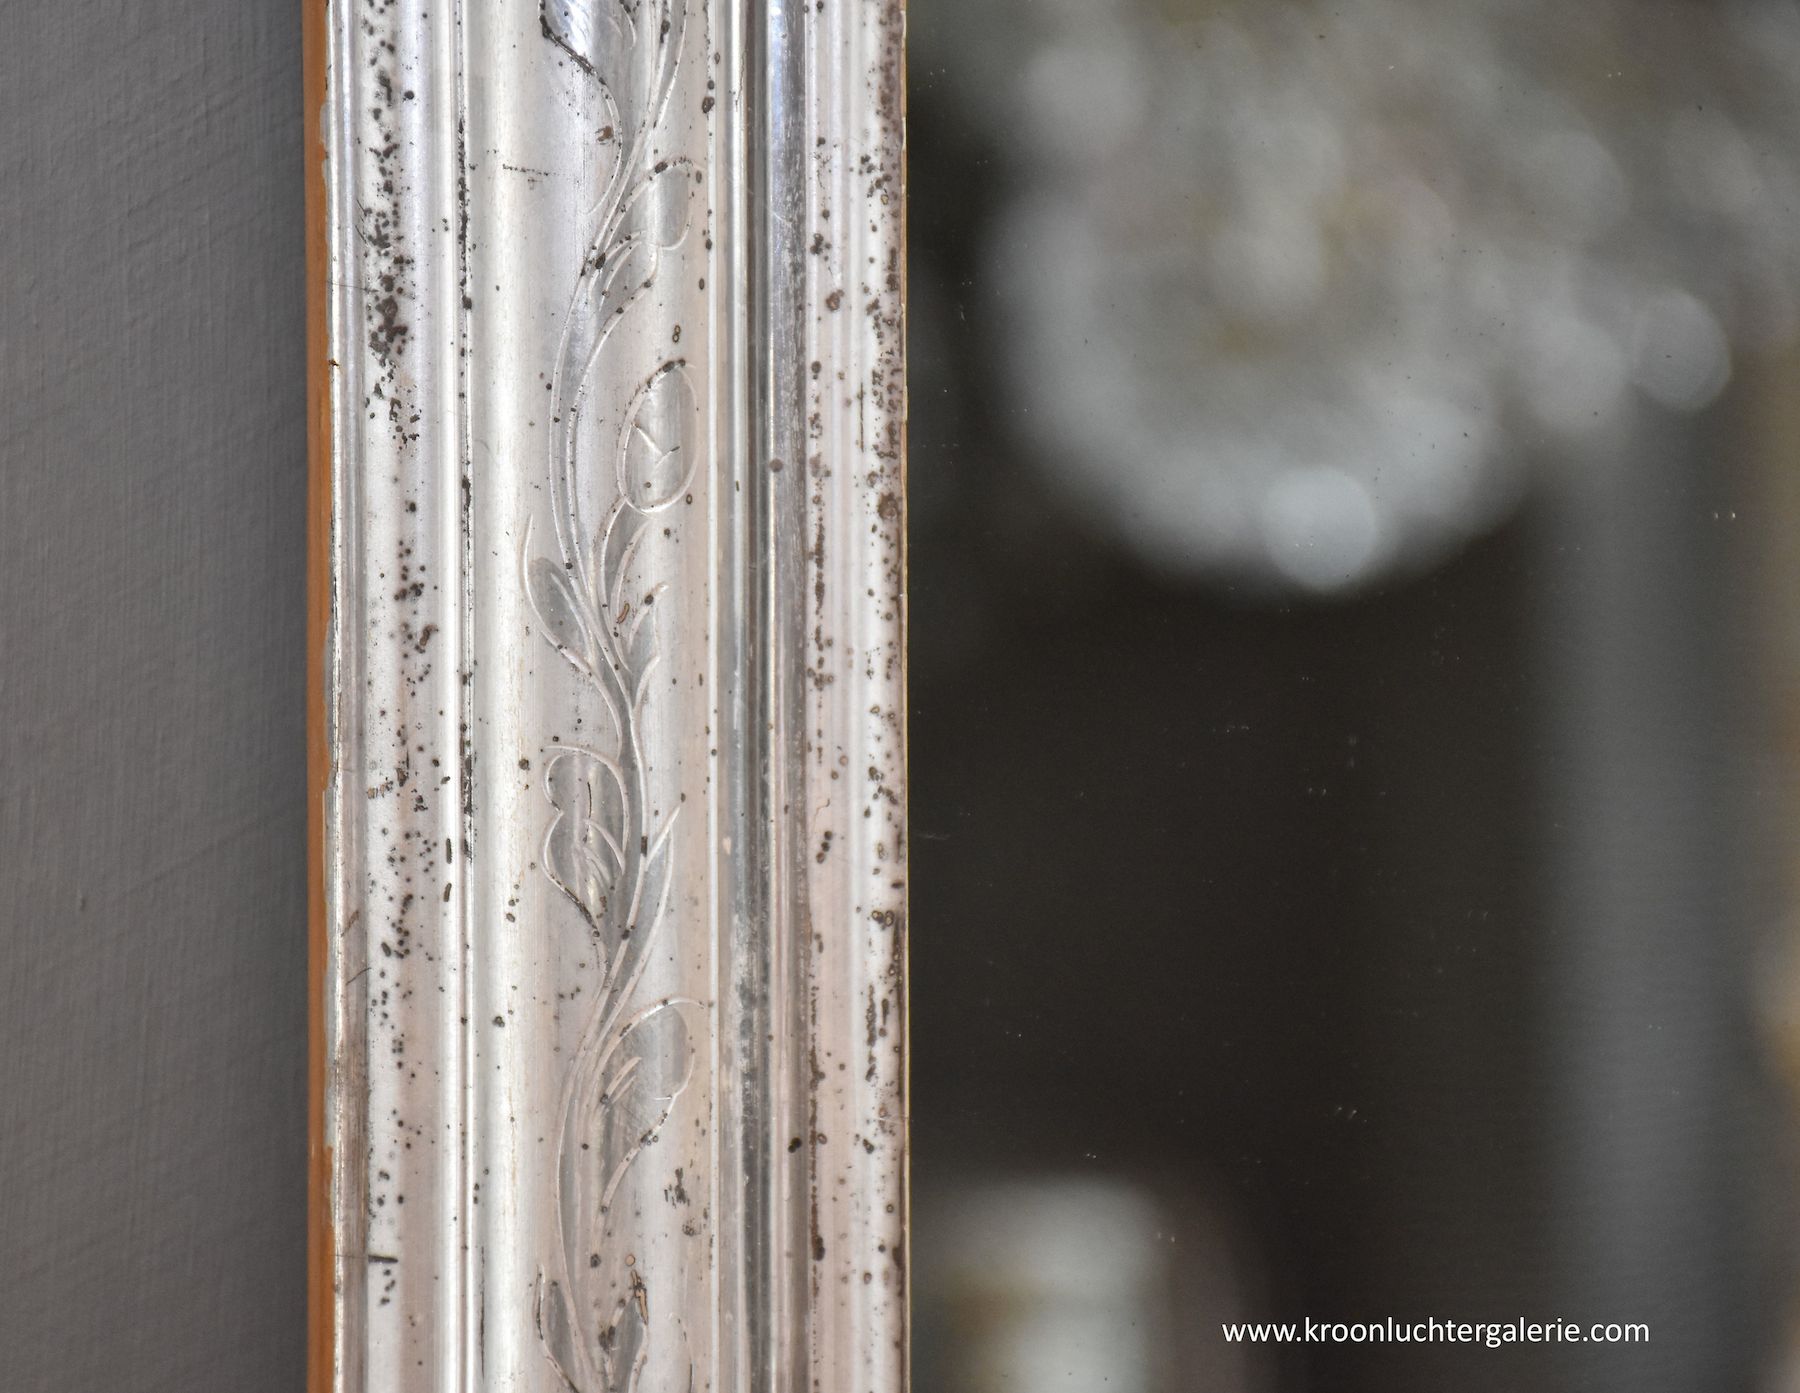 Antiker französischer Spiegel mit einer Krone, Blattsilber